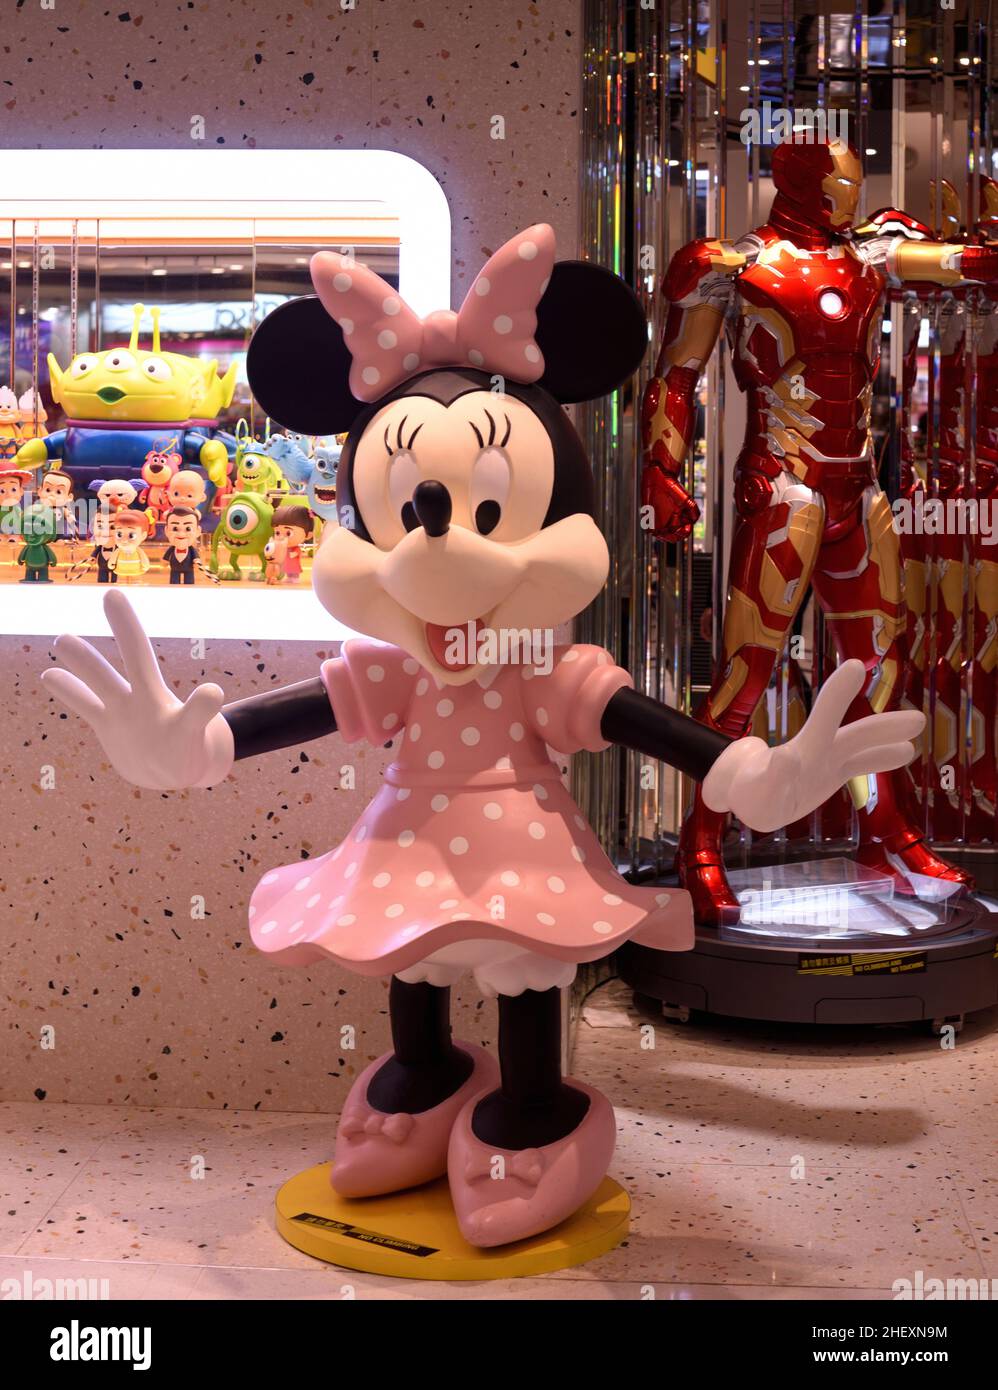 Los alegres espectáculos de Minnie son bienvenidos con los brazos abiertos en una tienda de juguetes Foto de stock